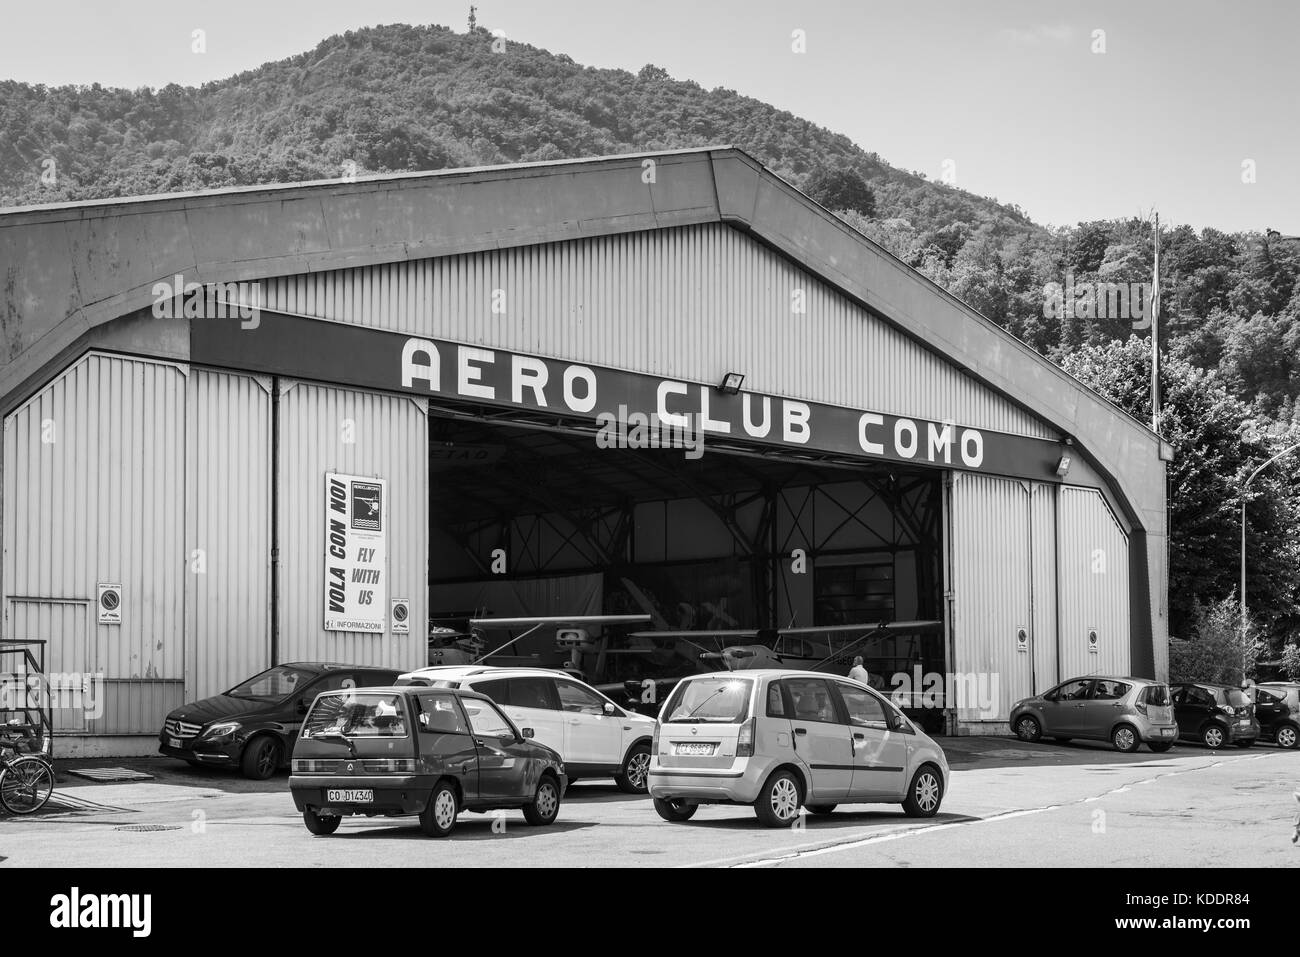 Como, Italien - 27. Mai 2016: Hangar des Aero Club Como an der Flugplatz von Comer See in Como, Italien. die Schwarz-Weiß-Fotografie. Stockfoto